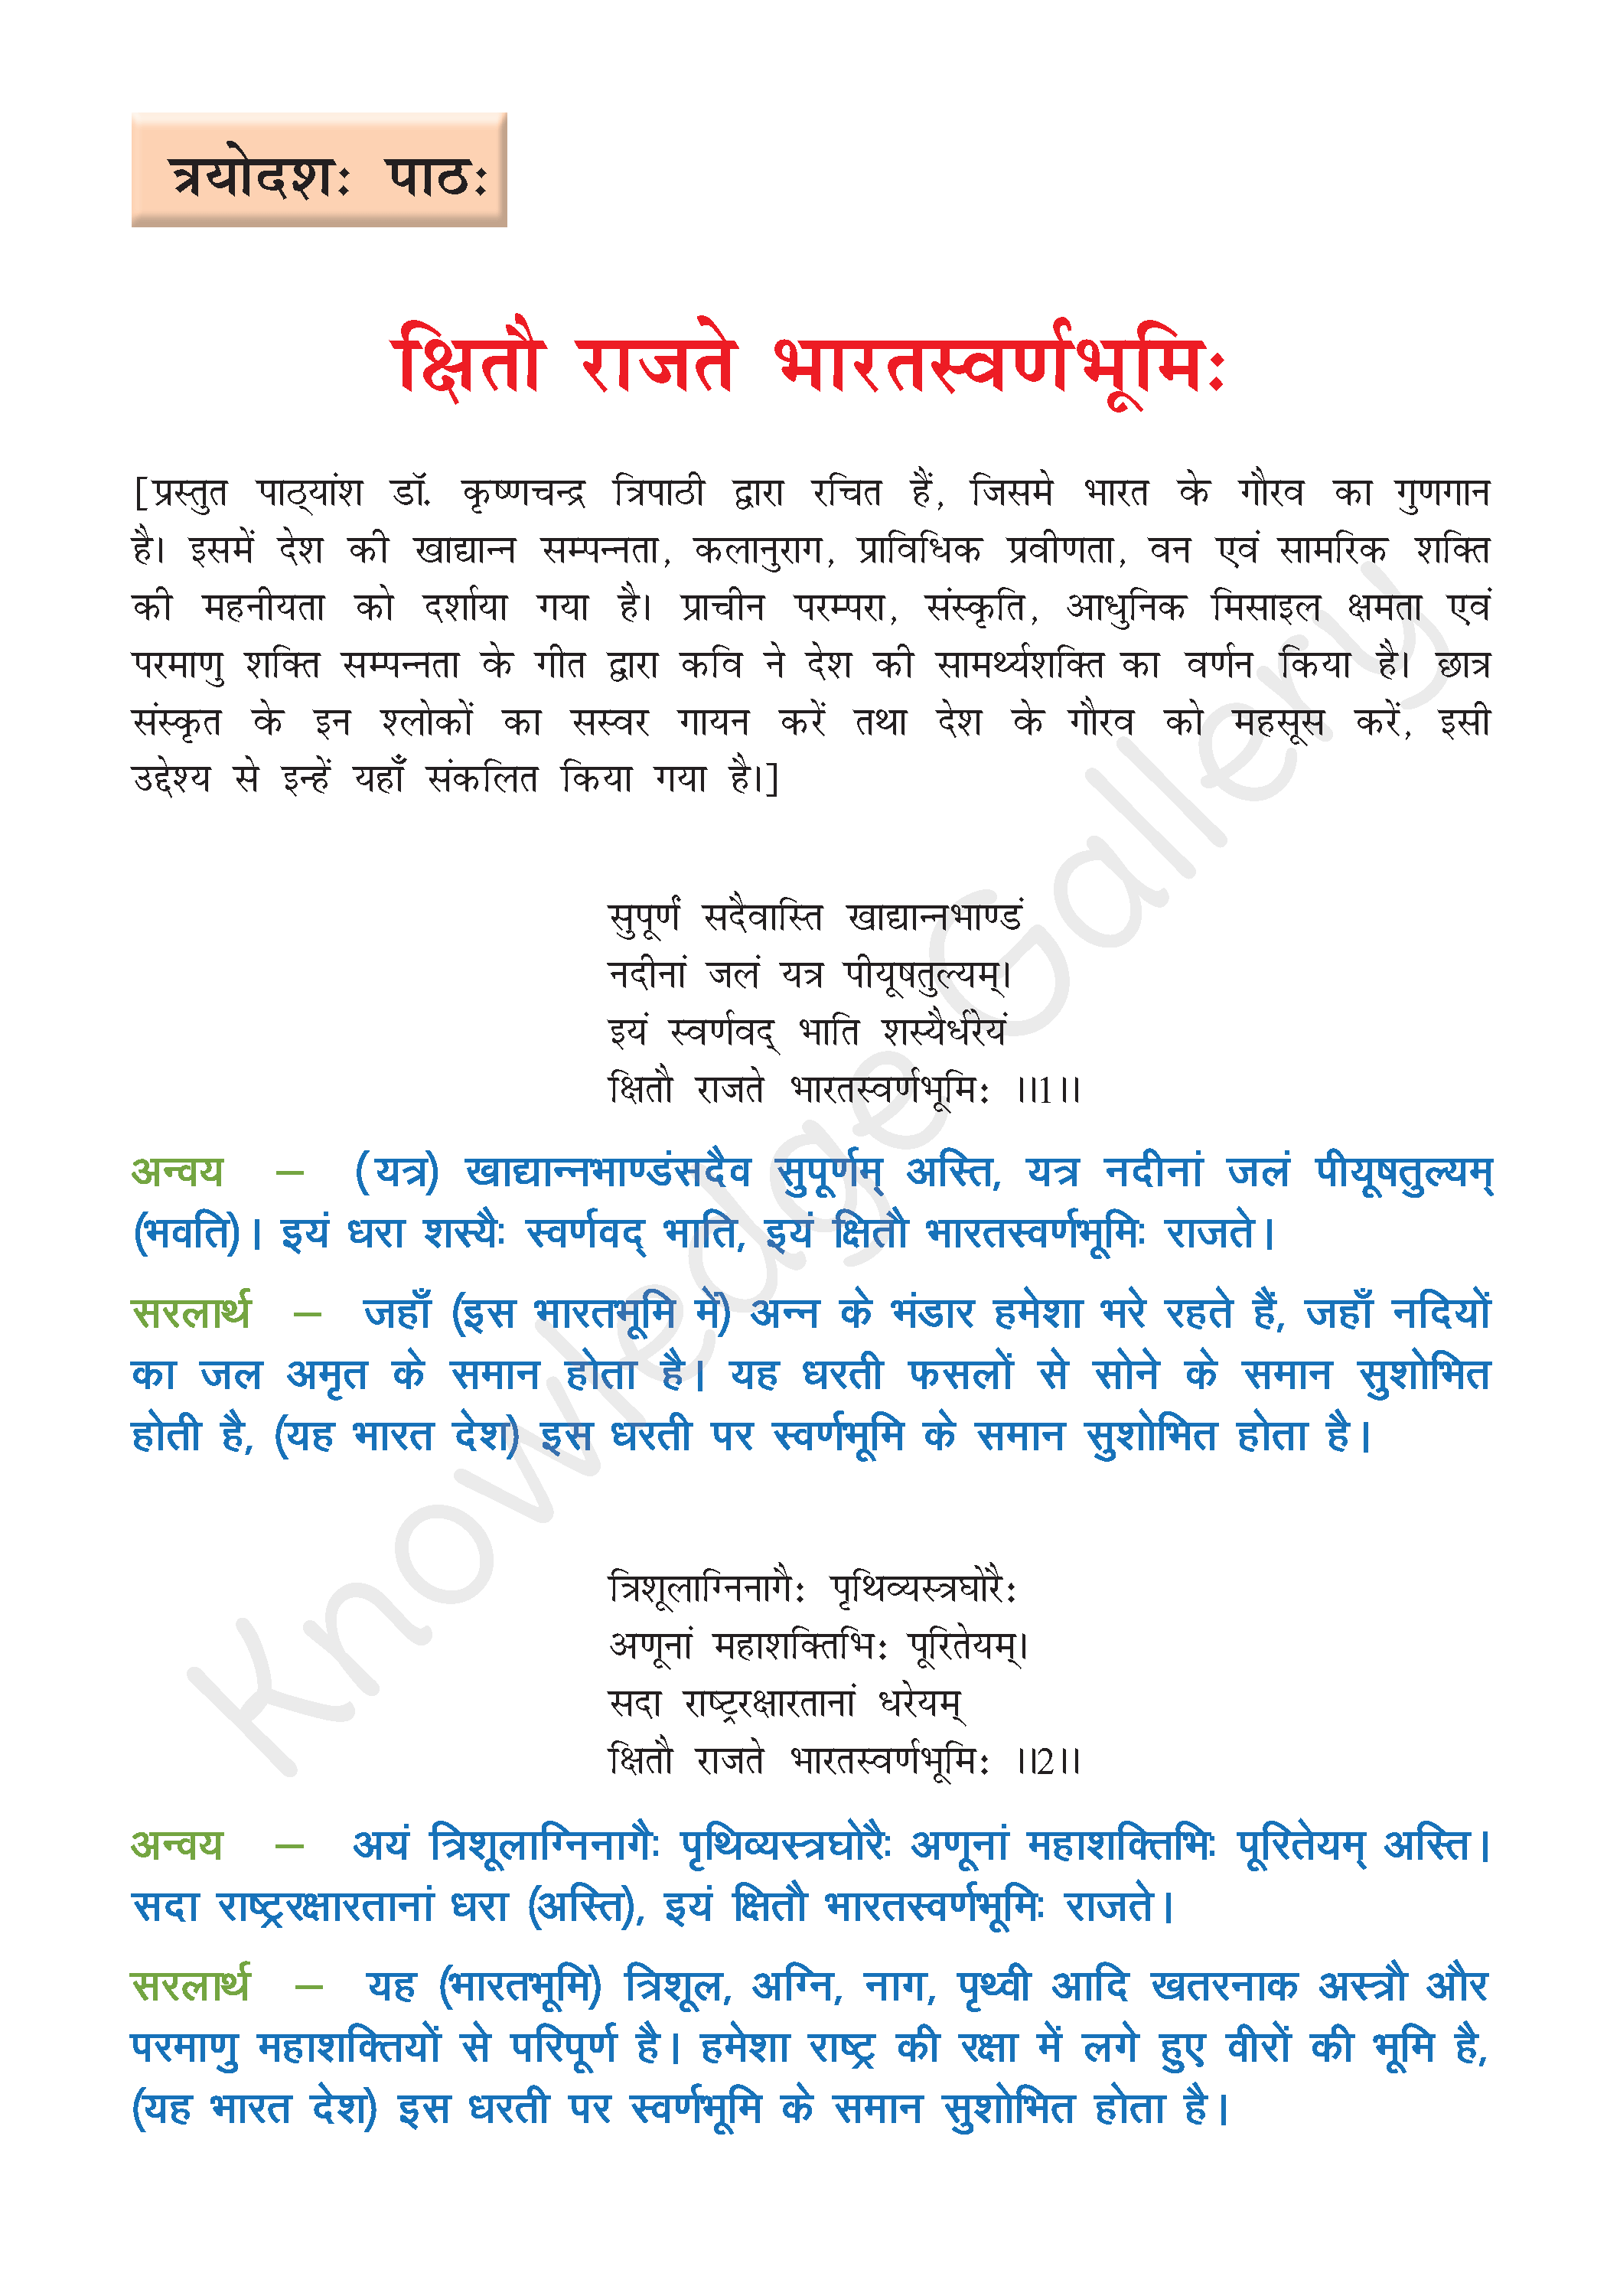 NCERT Solution For Class 8 Sanskrit Chapter 13 part 1